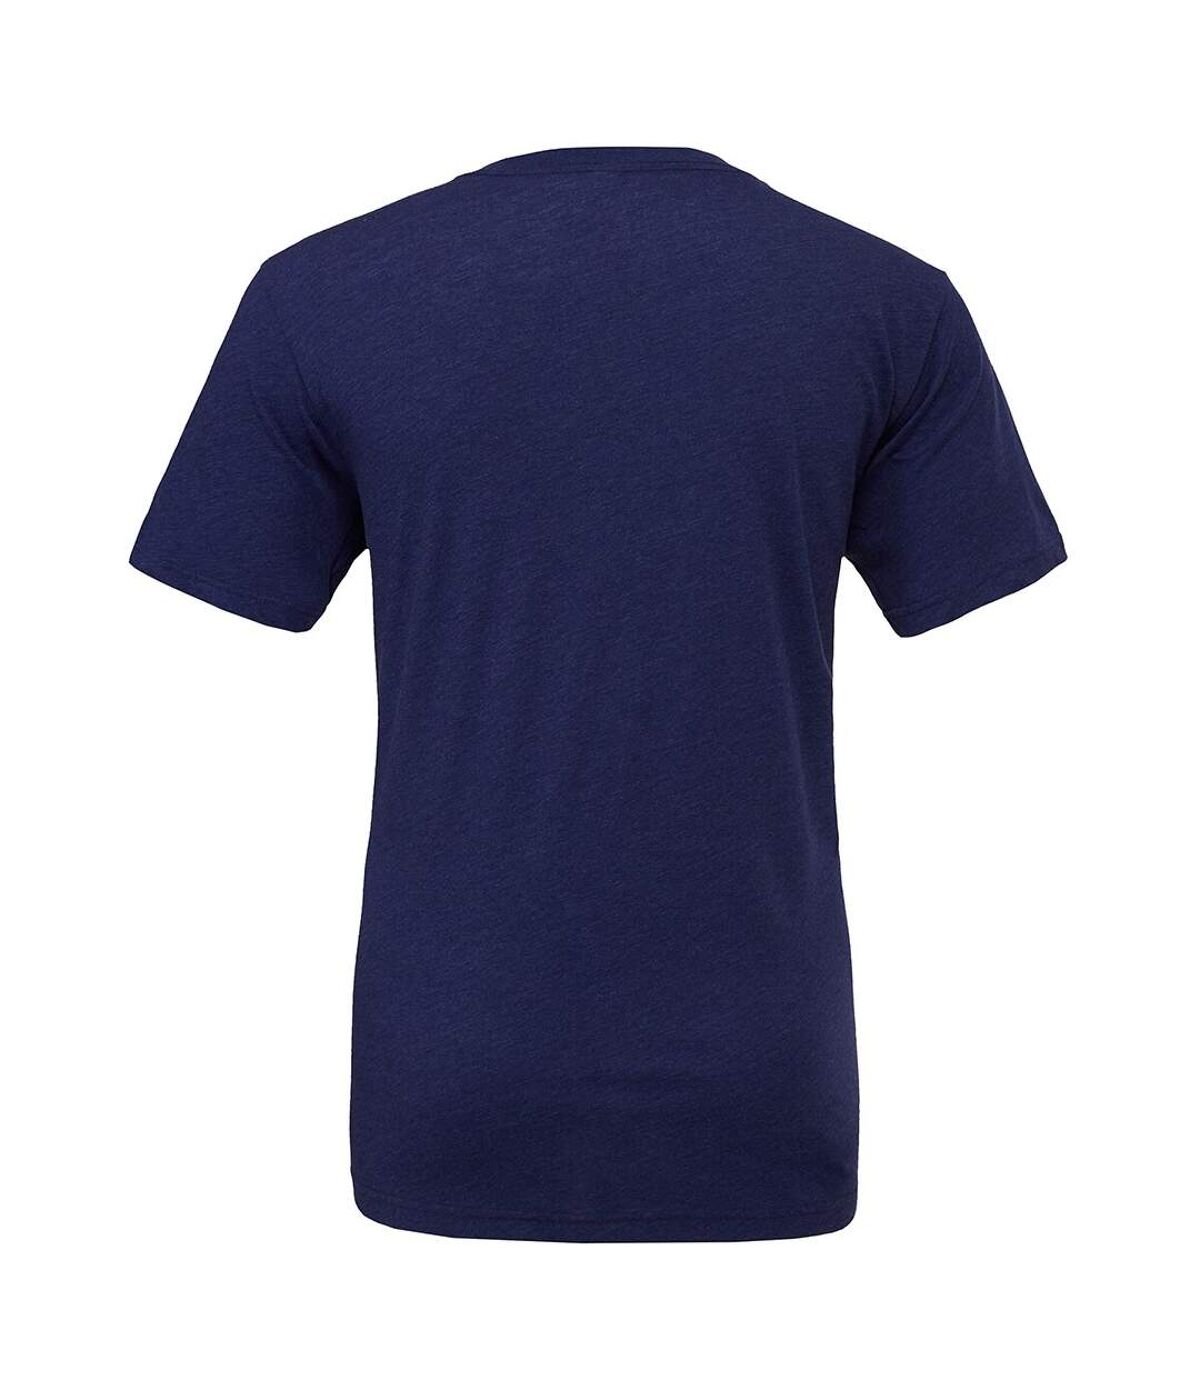 Canvas - T-shirt à manches courtes - Homme (Bleu marine) - UTBC2596